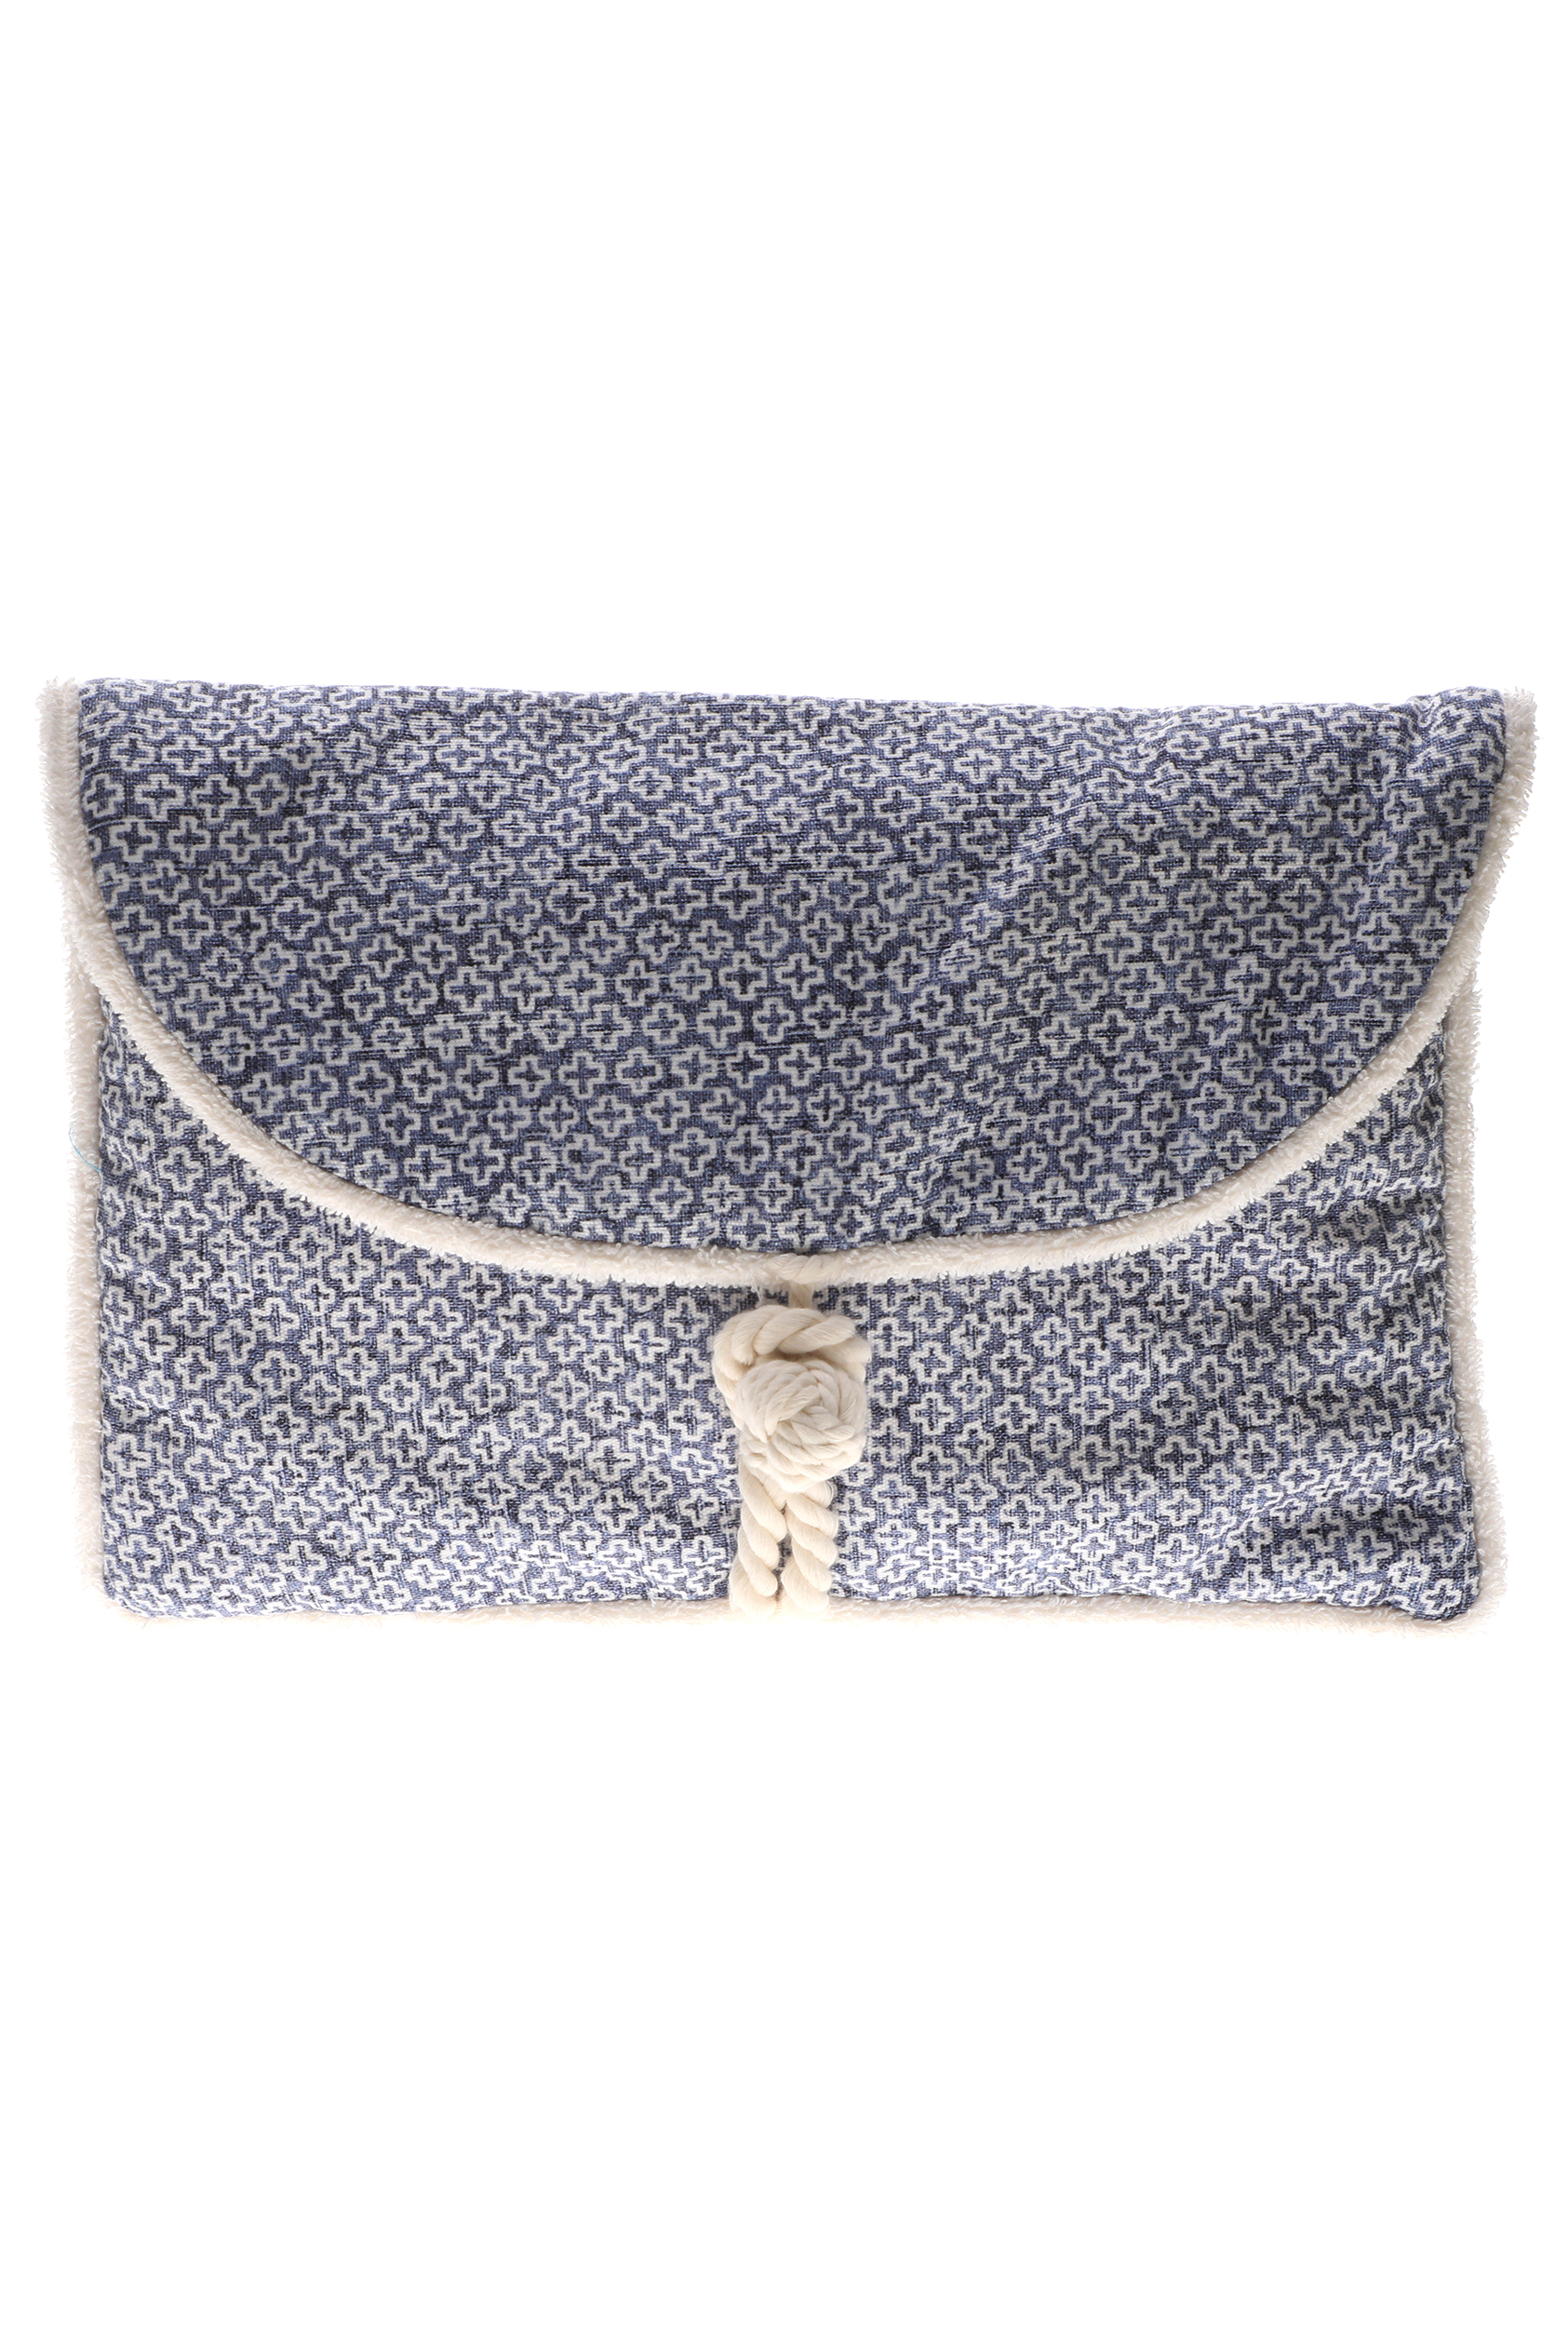 Γυναικεία/Αξεσουάρ/Τσάντες-Σακίδια/Νεσεσέρ SUN OF A BEACH - Γυναικείο τσαντάκι clutch SUN OF A BEACH Envelope Pouch λευκό μπλε